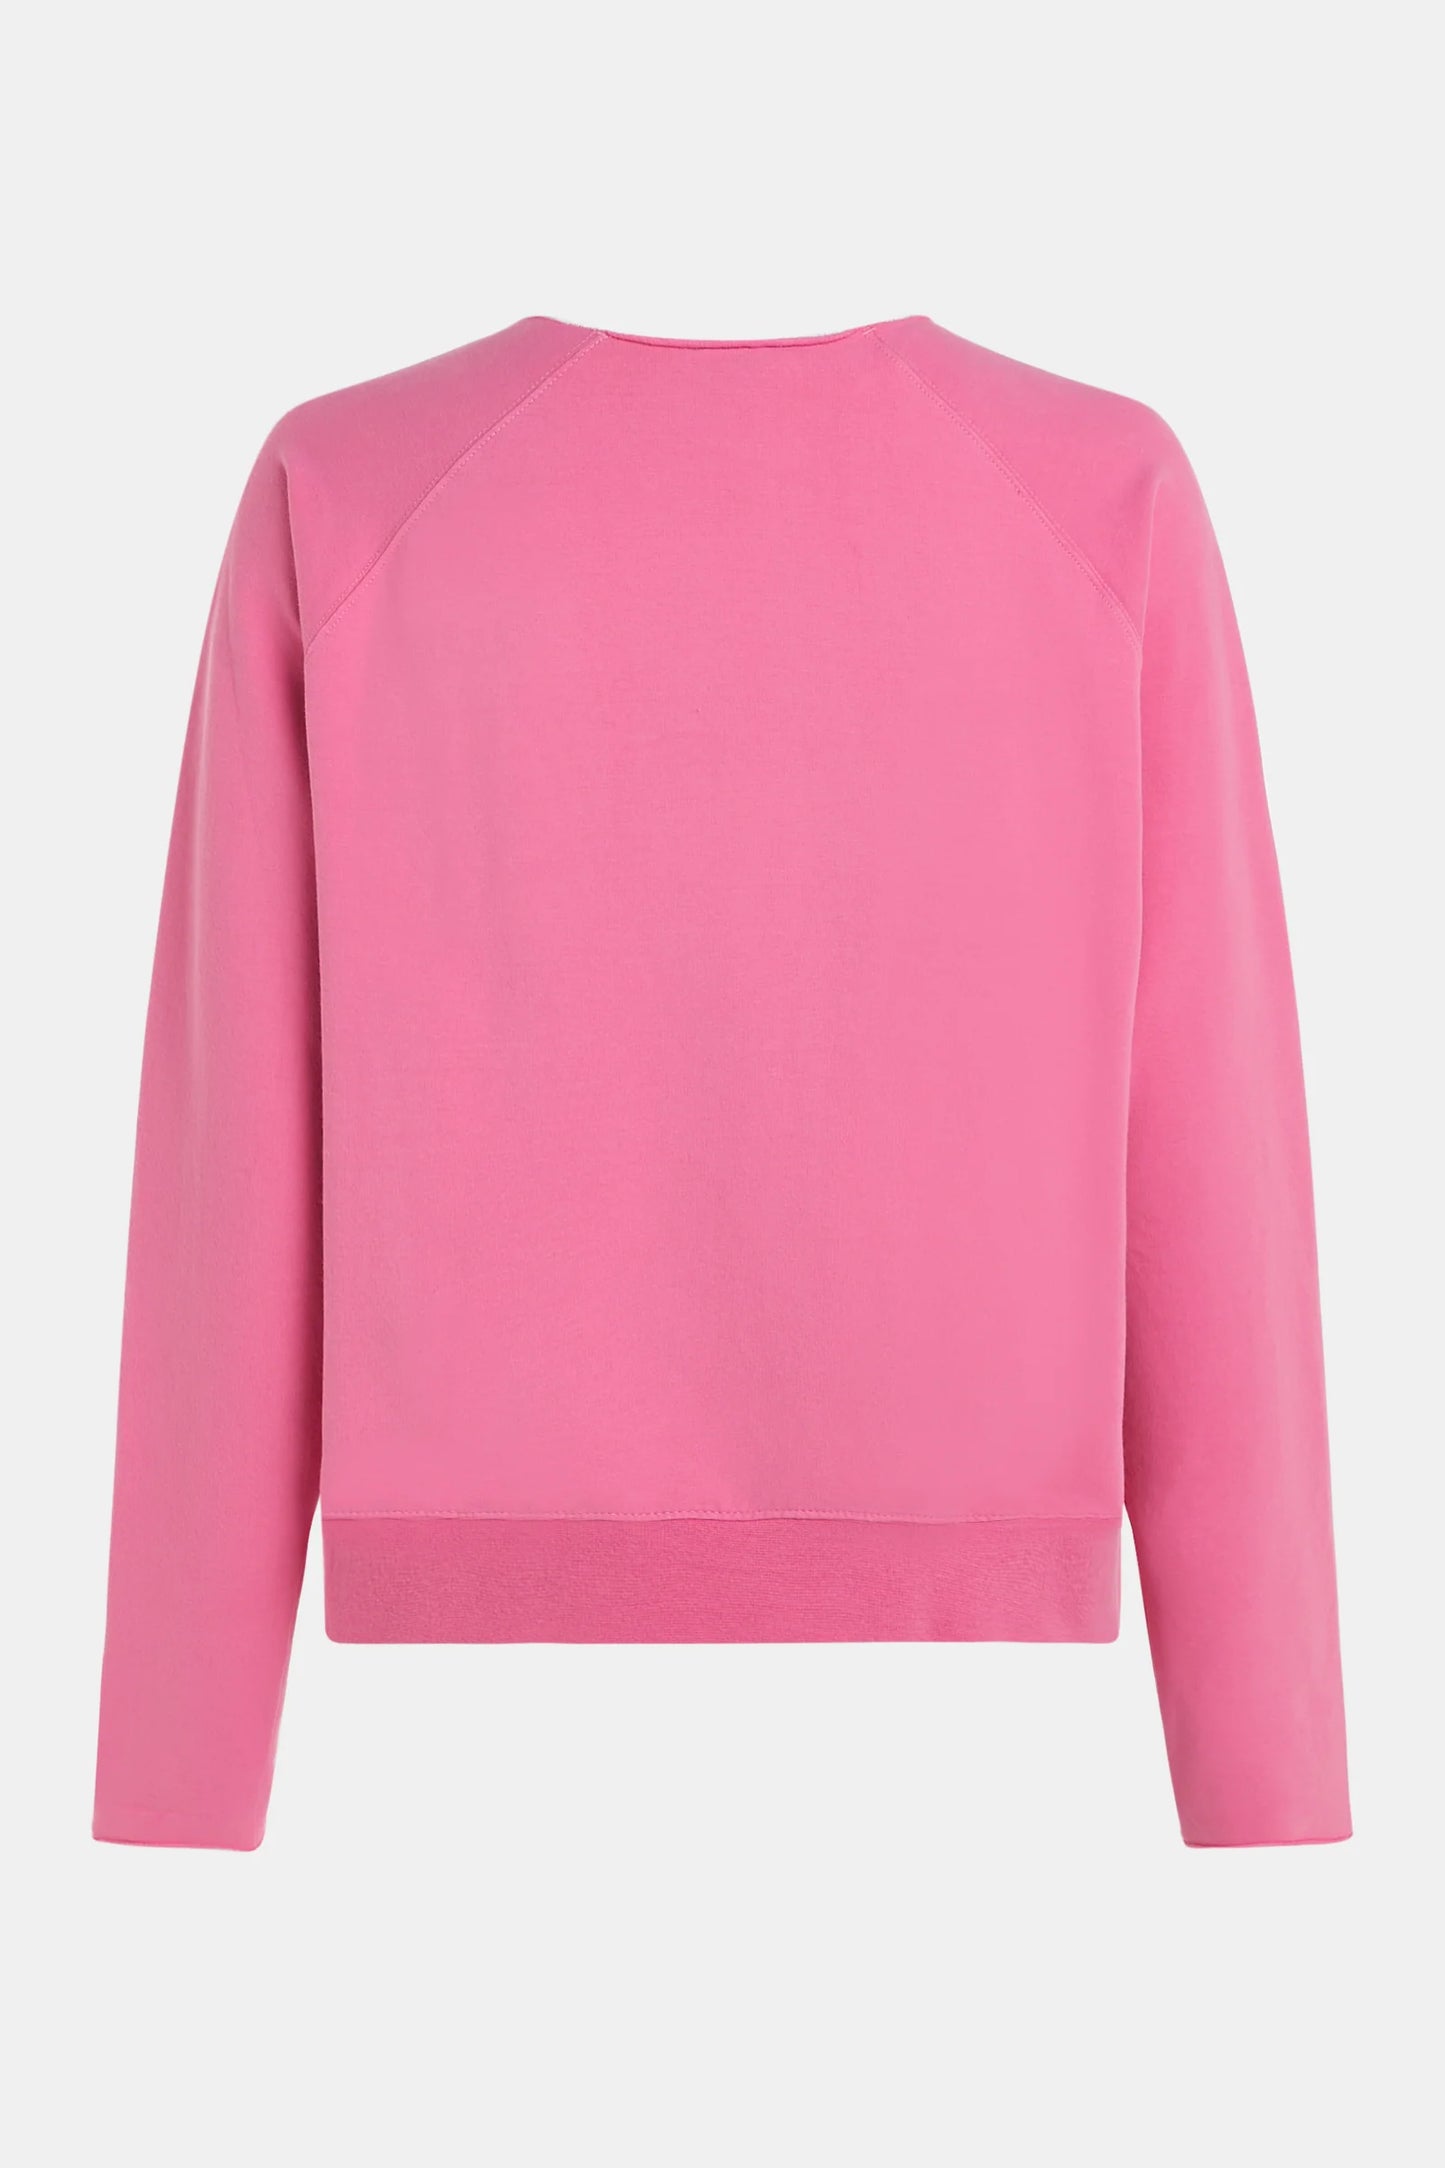 Penn & Ink | Sweater Print (S24F1466LTD) Hot Pink